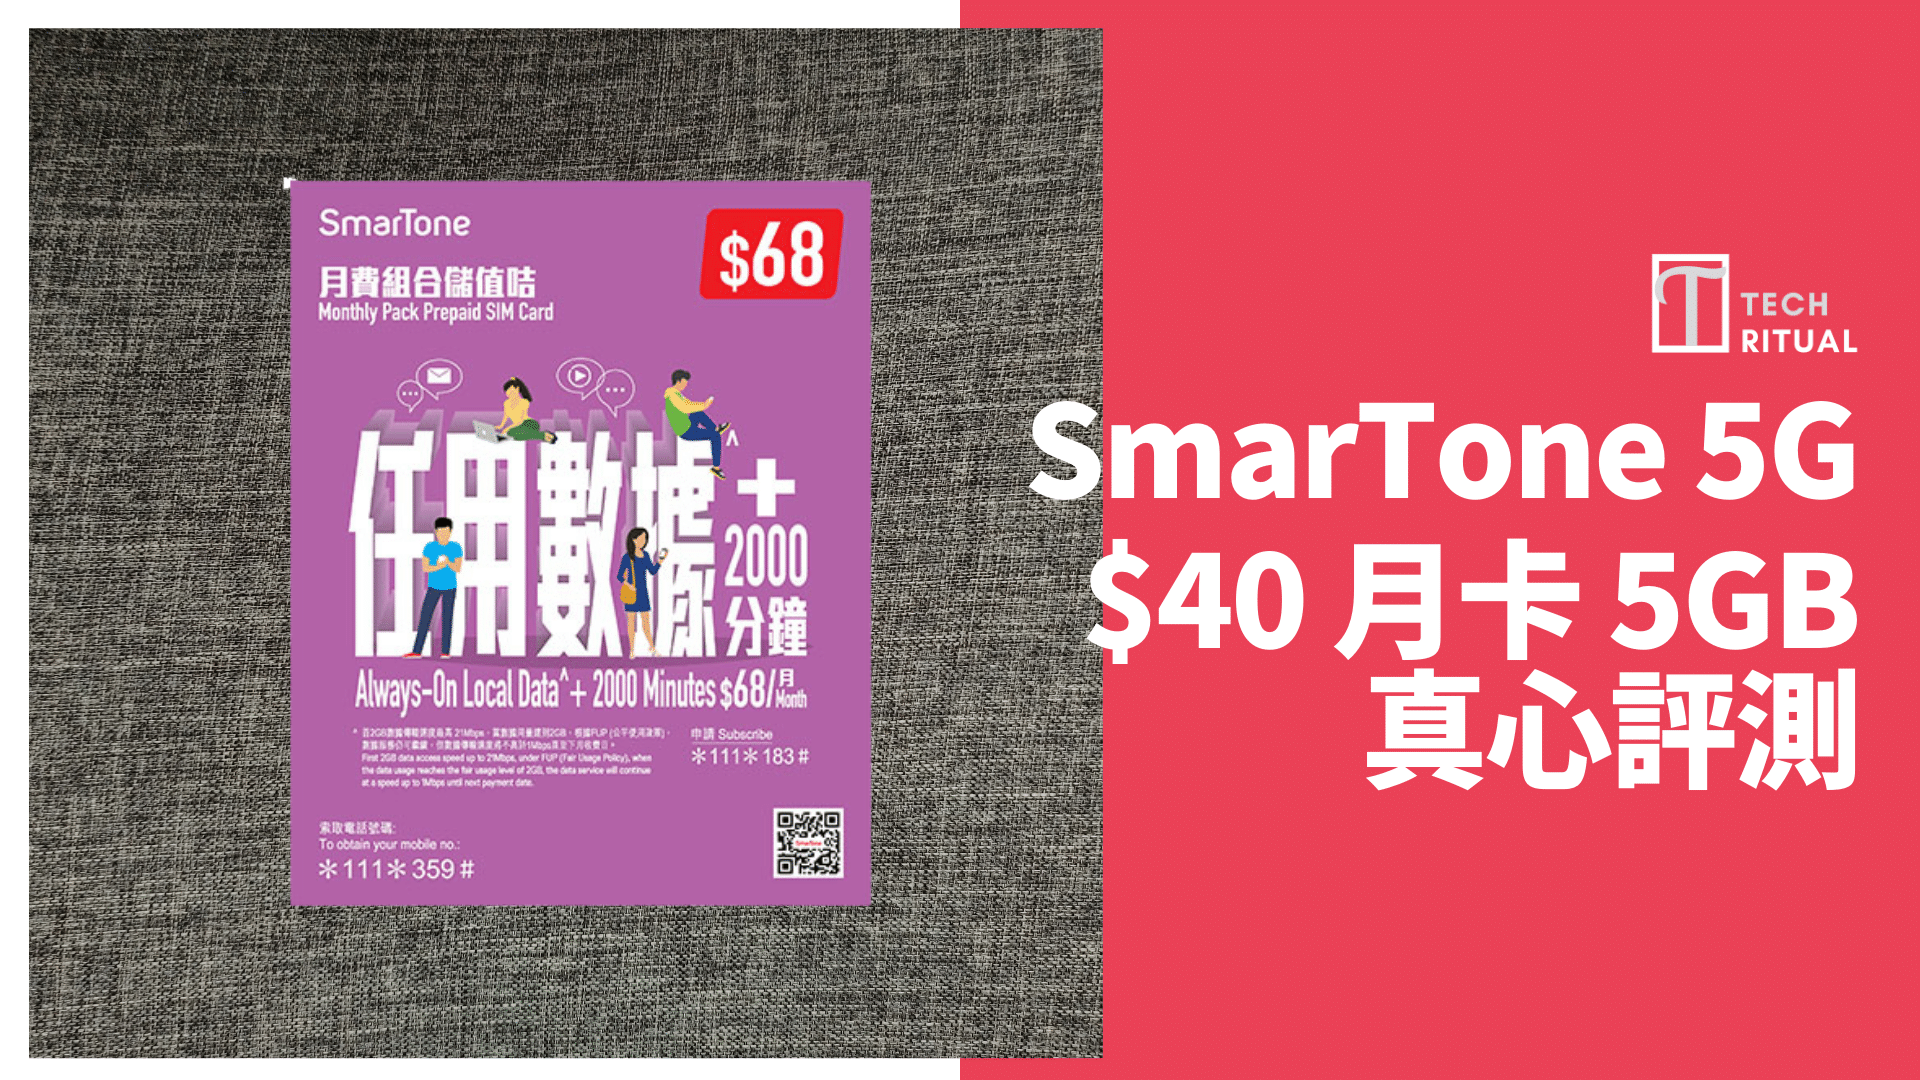 【評測】5G SmarTone 任用數據  5GB 香港可用儲值月卡，速度達 89Mbps，1GB=